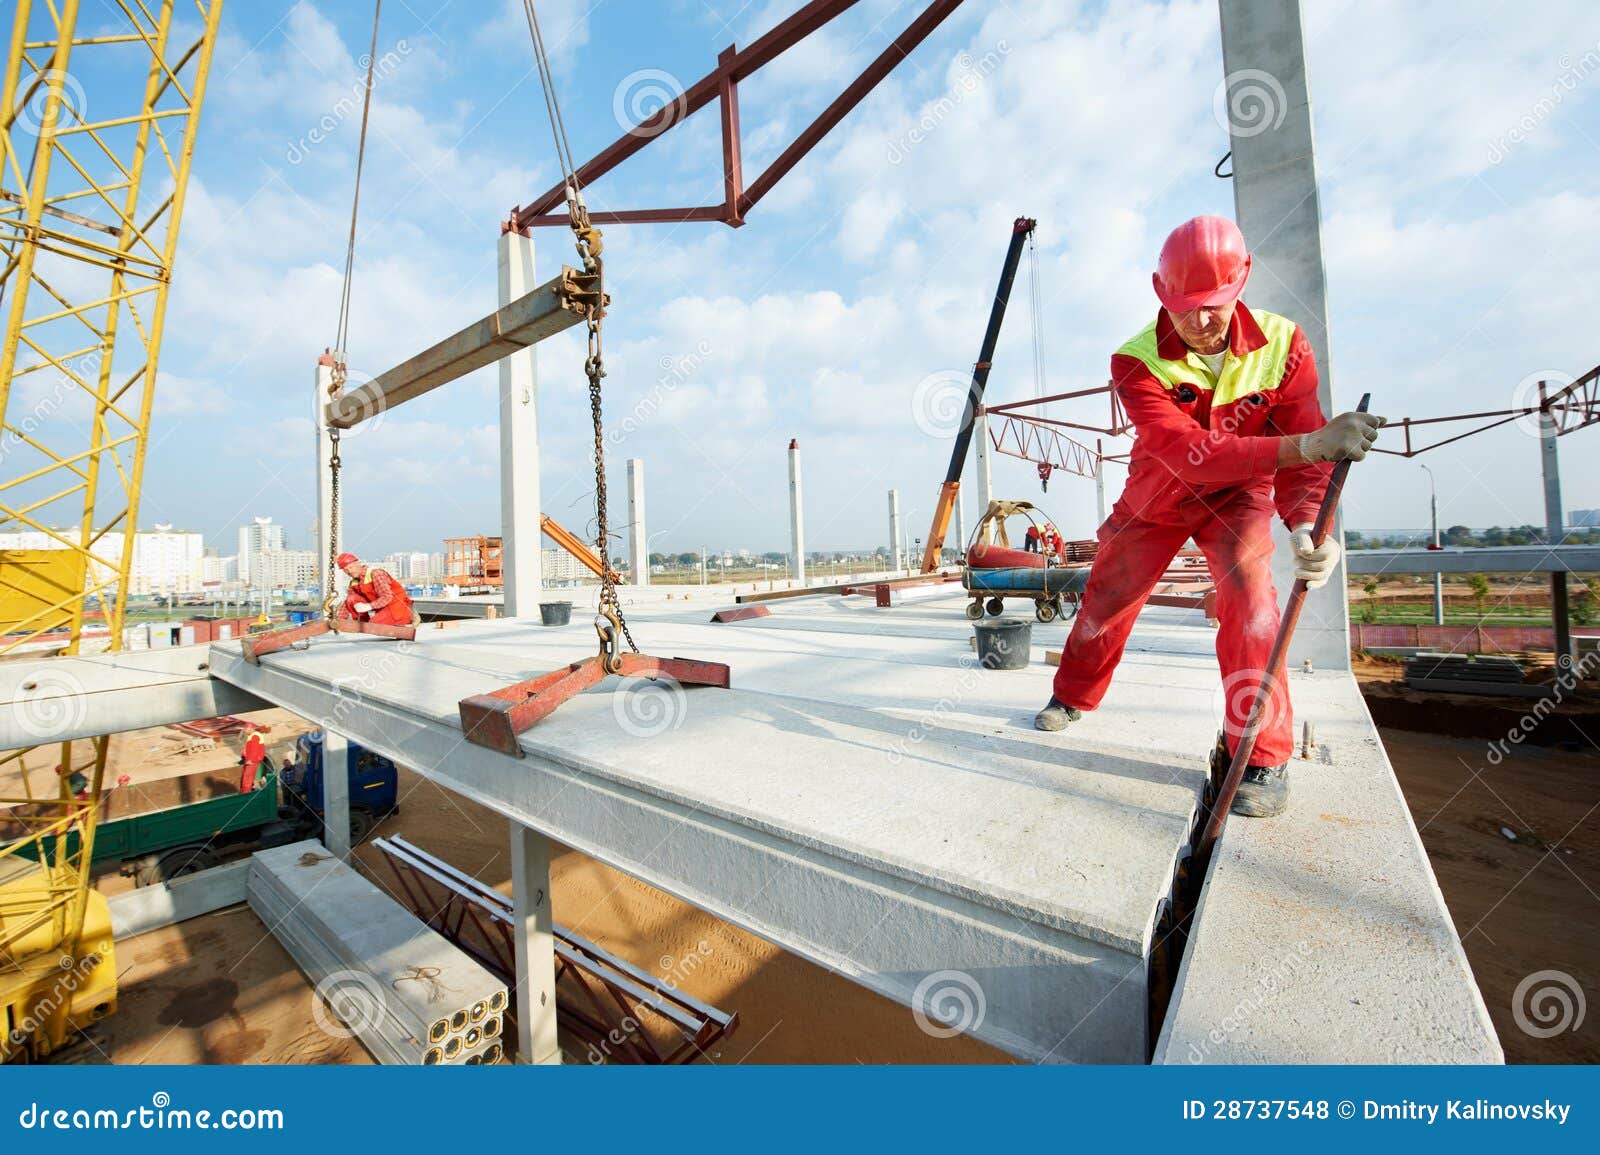 builder worker installing concrete slab